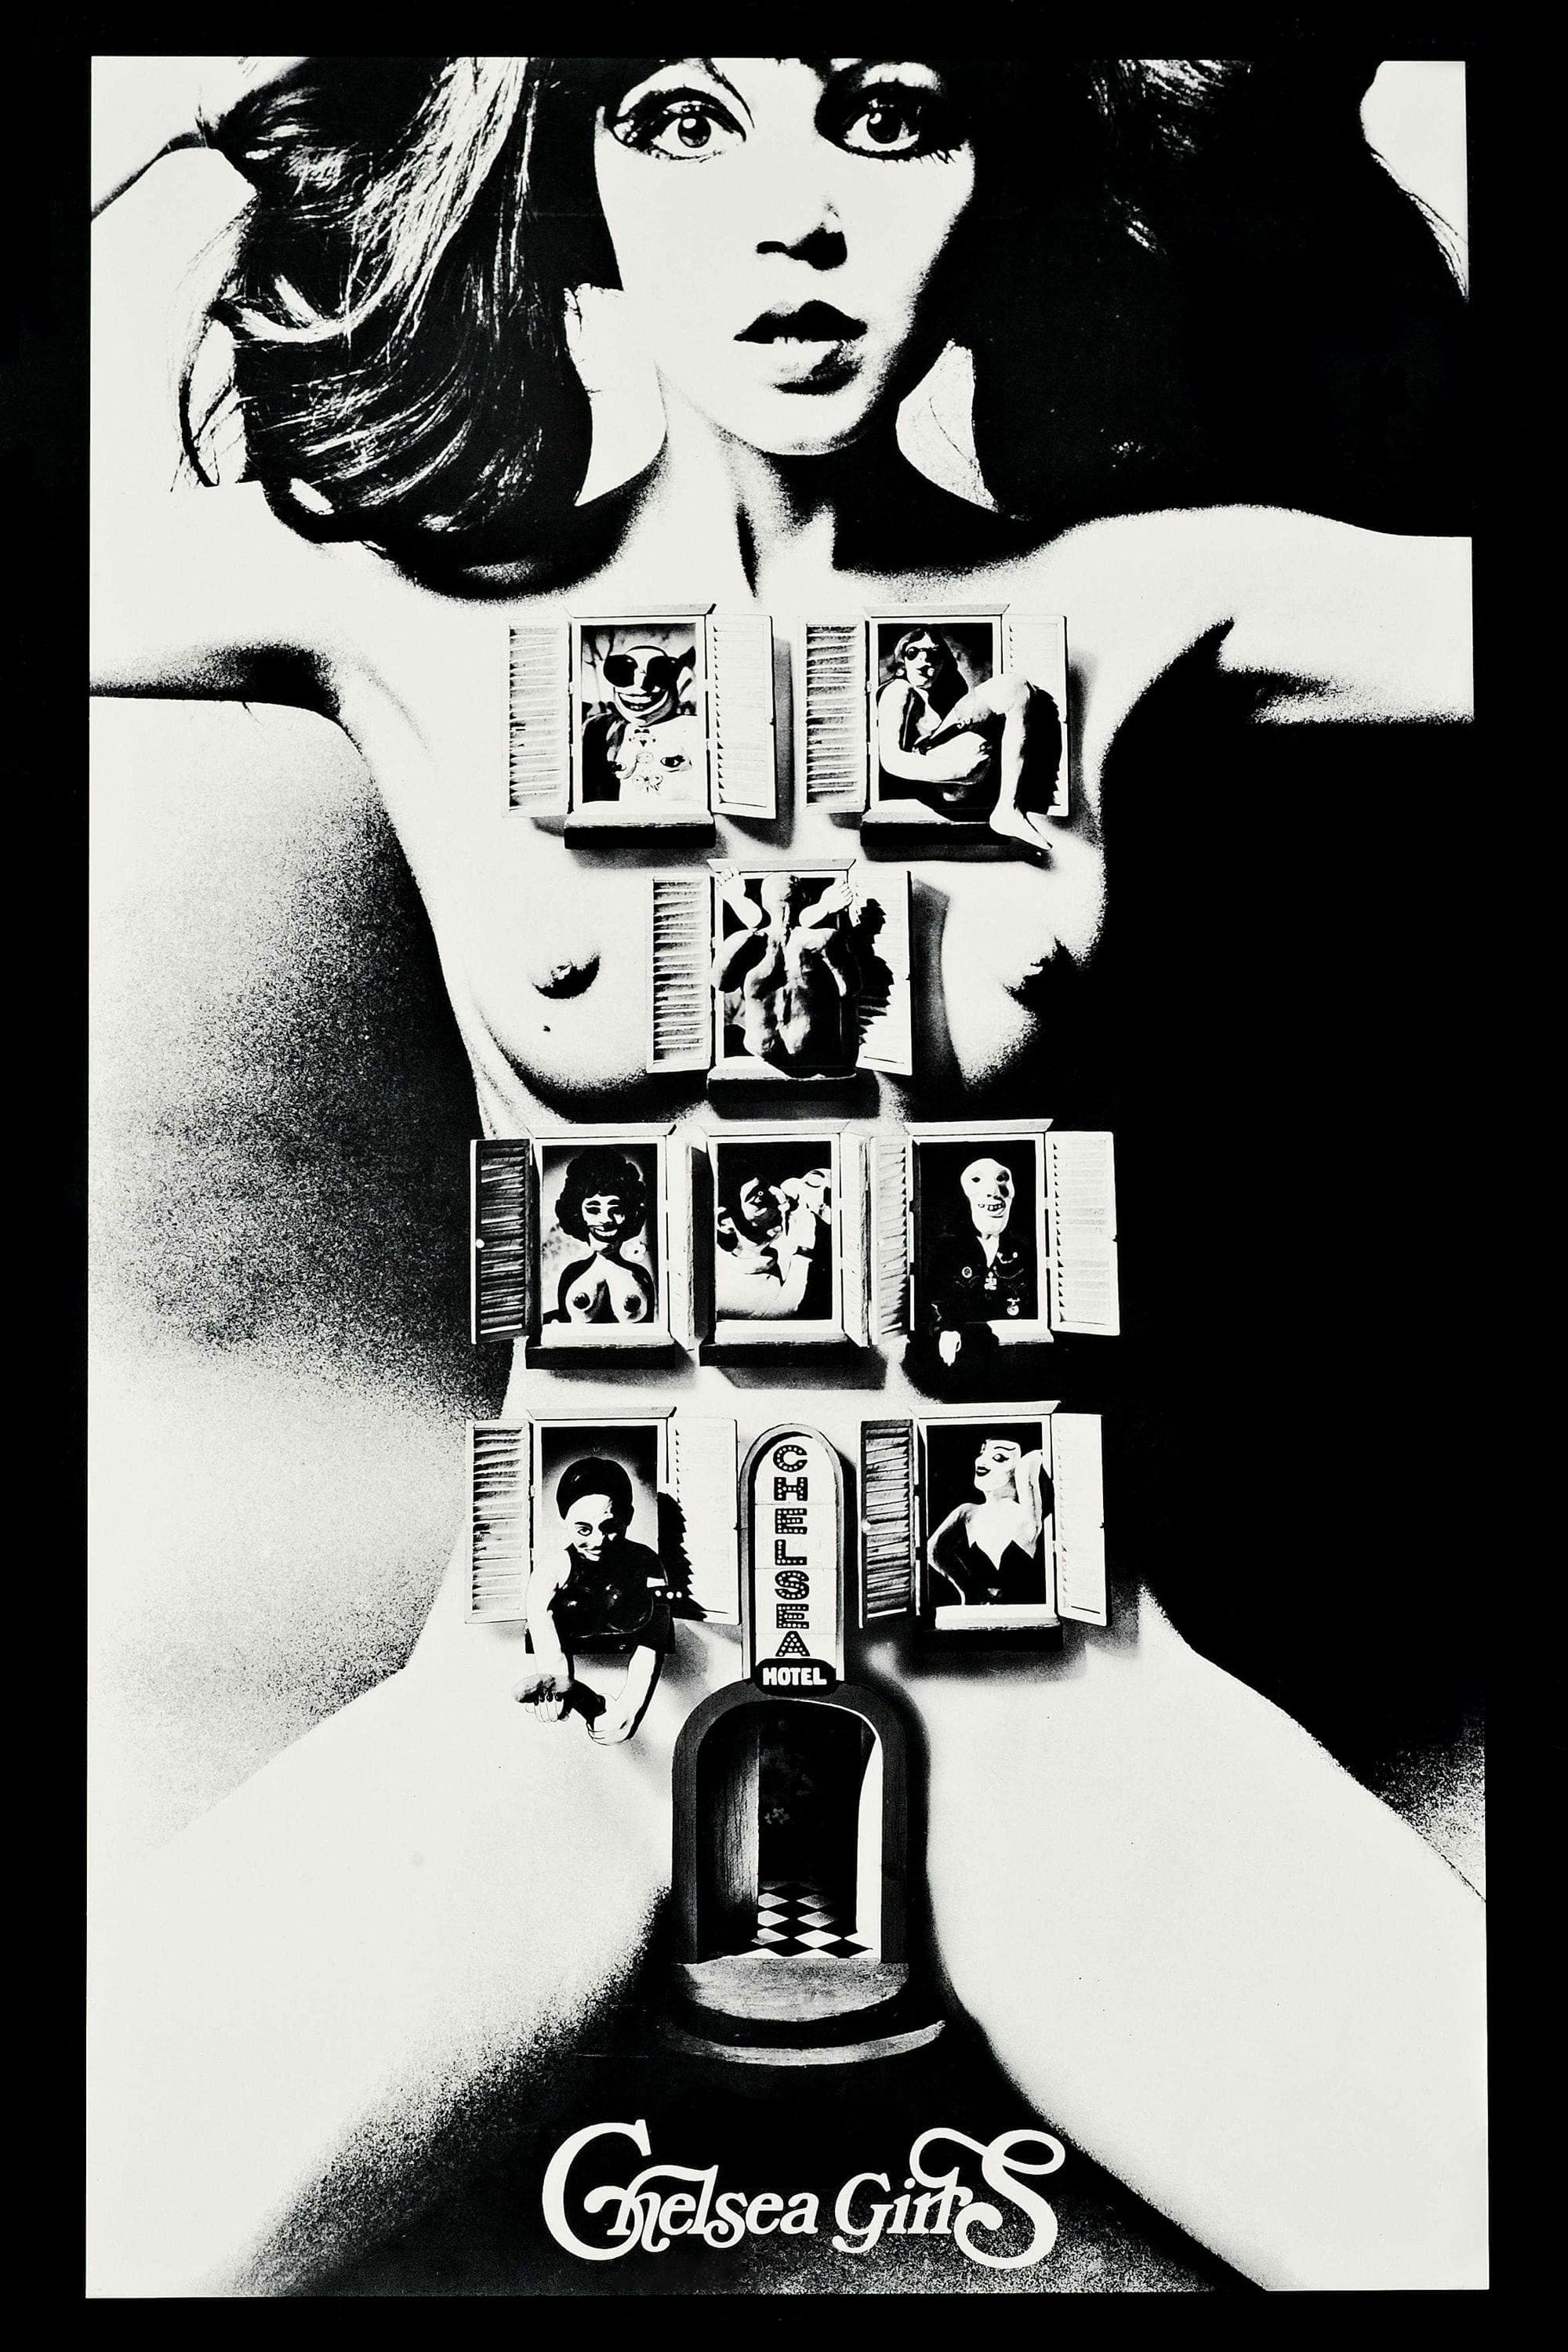 Chelsea Girls (1966)